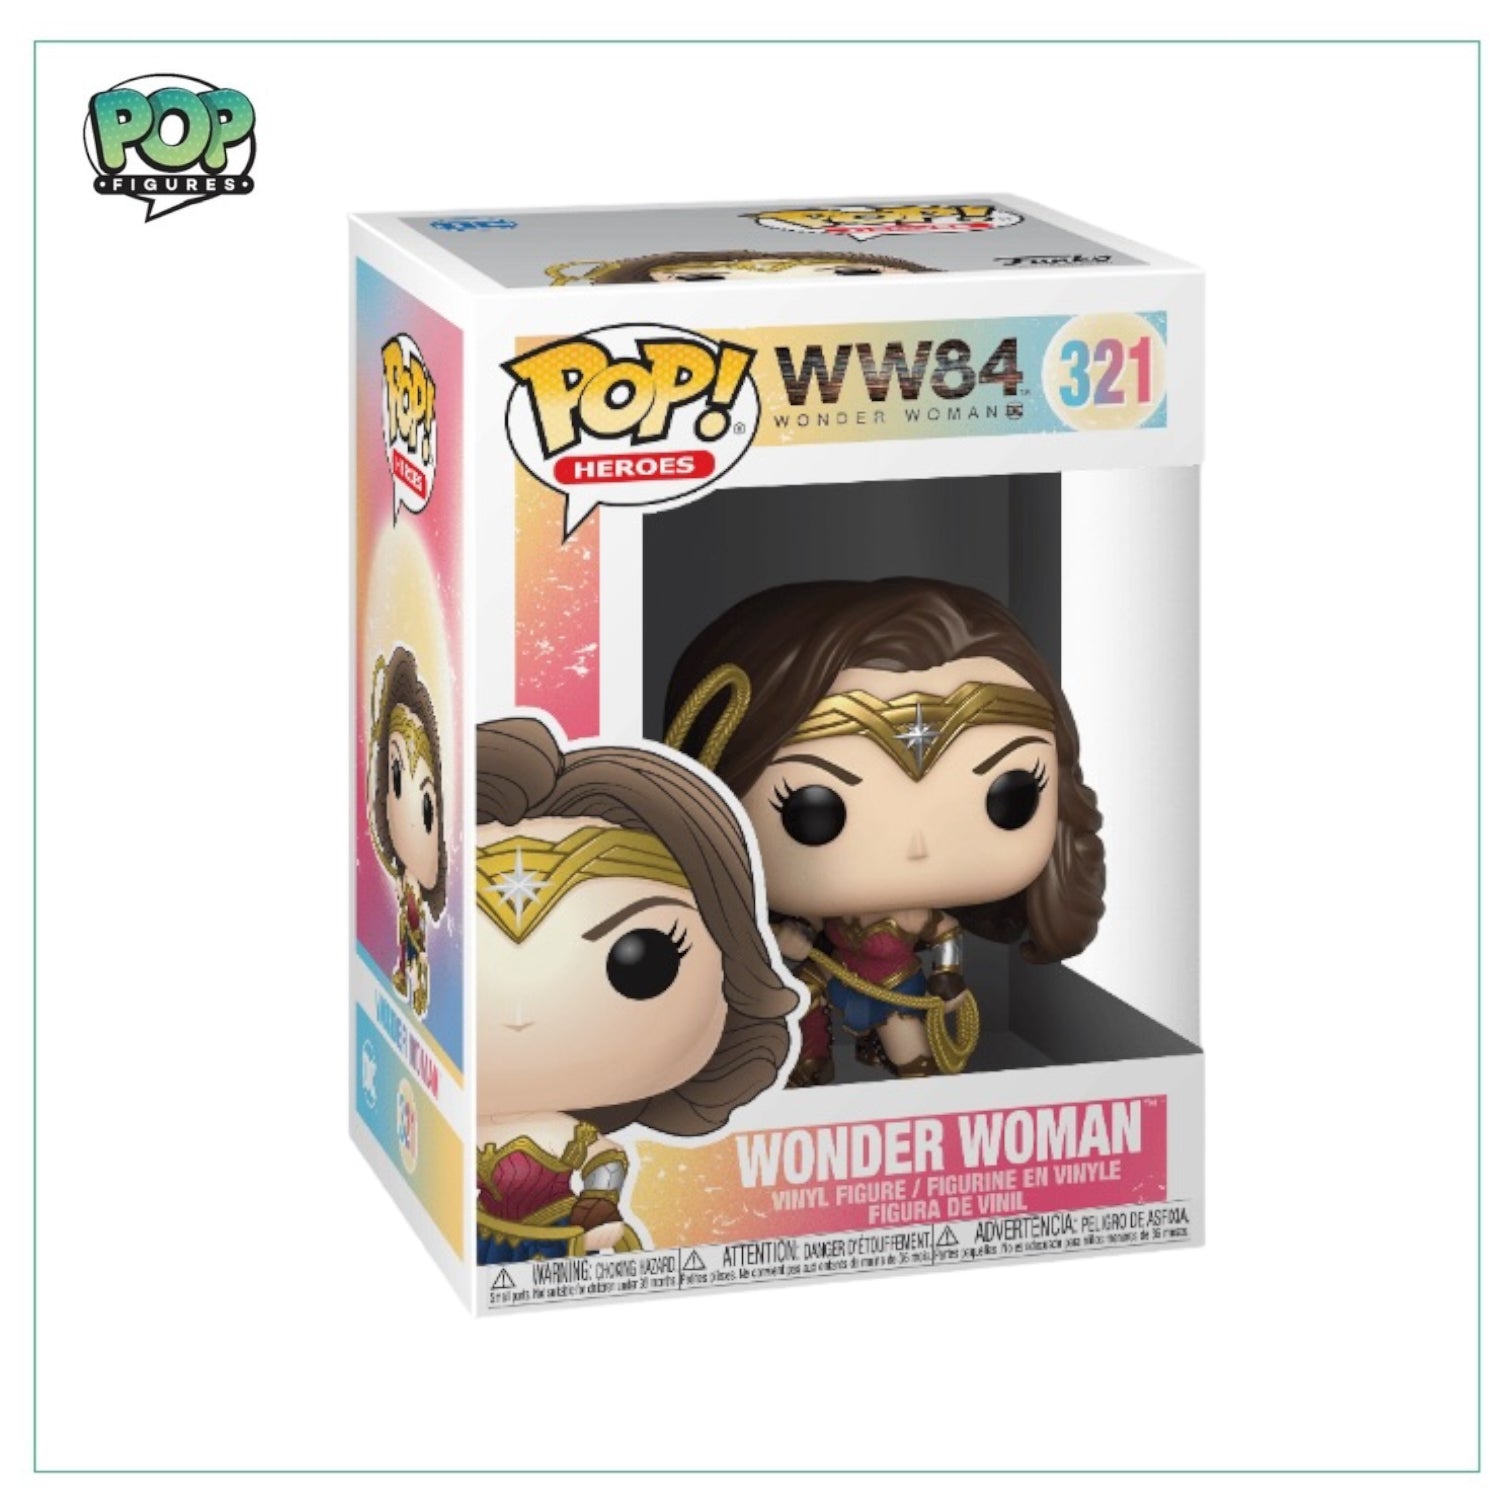 Wonder Woman #321 Funko Pop! - WW84